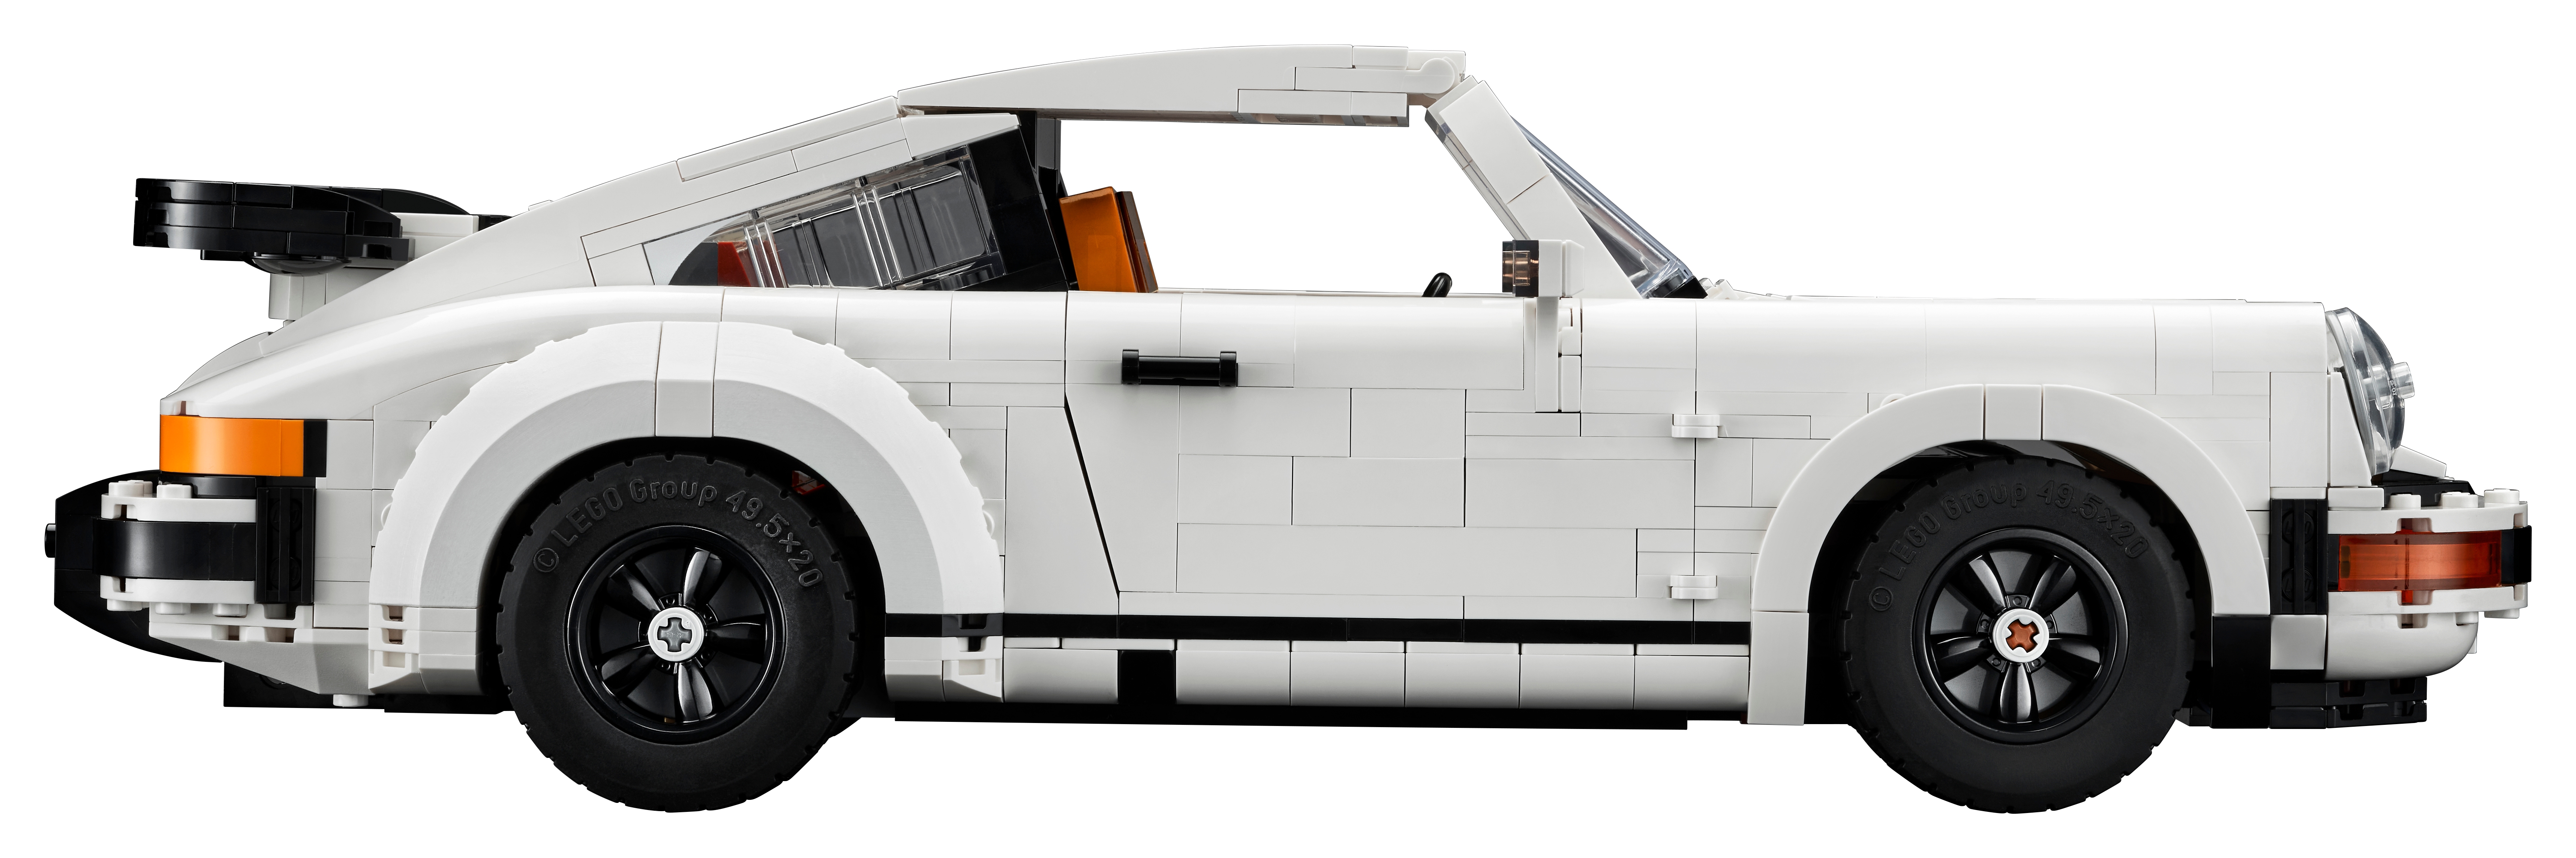 LEGO Porsche 911 - 10295